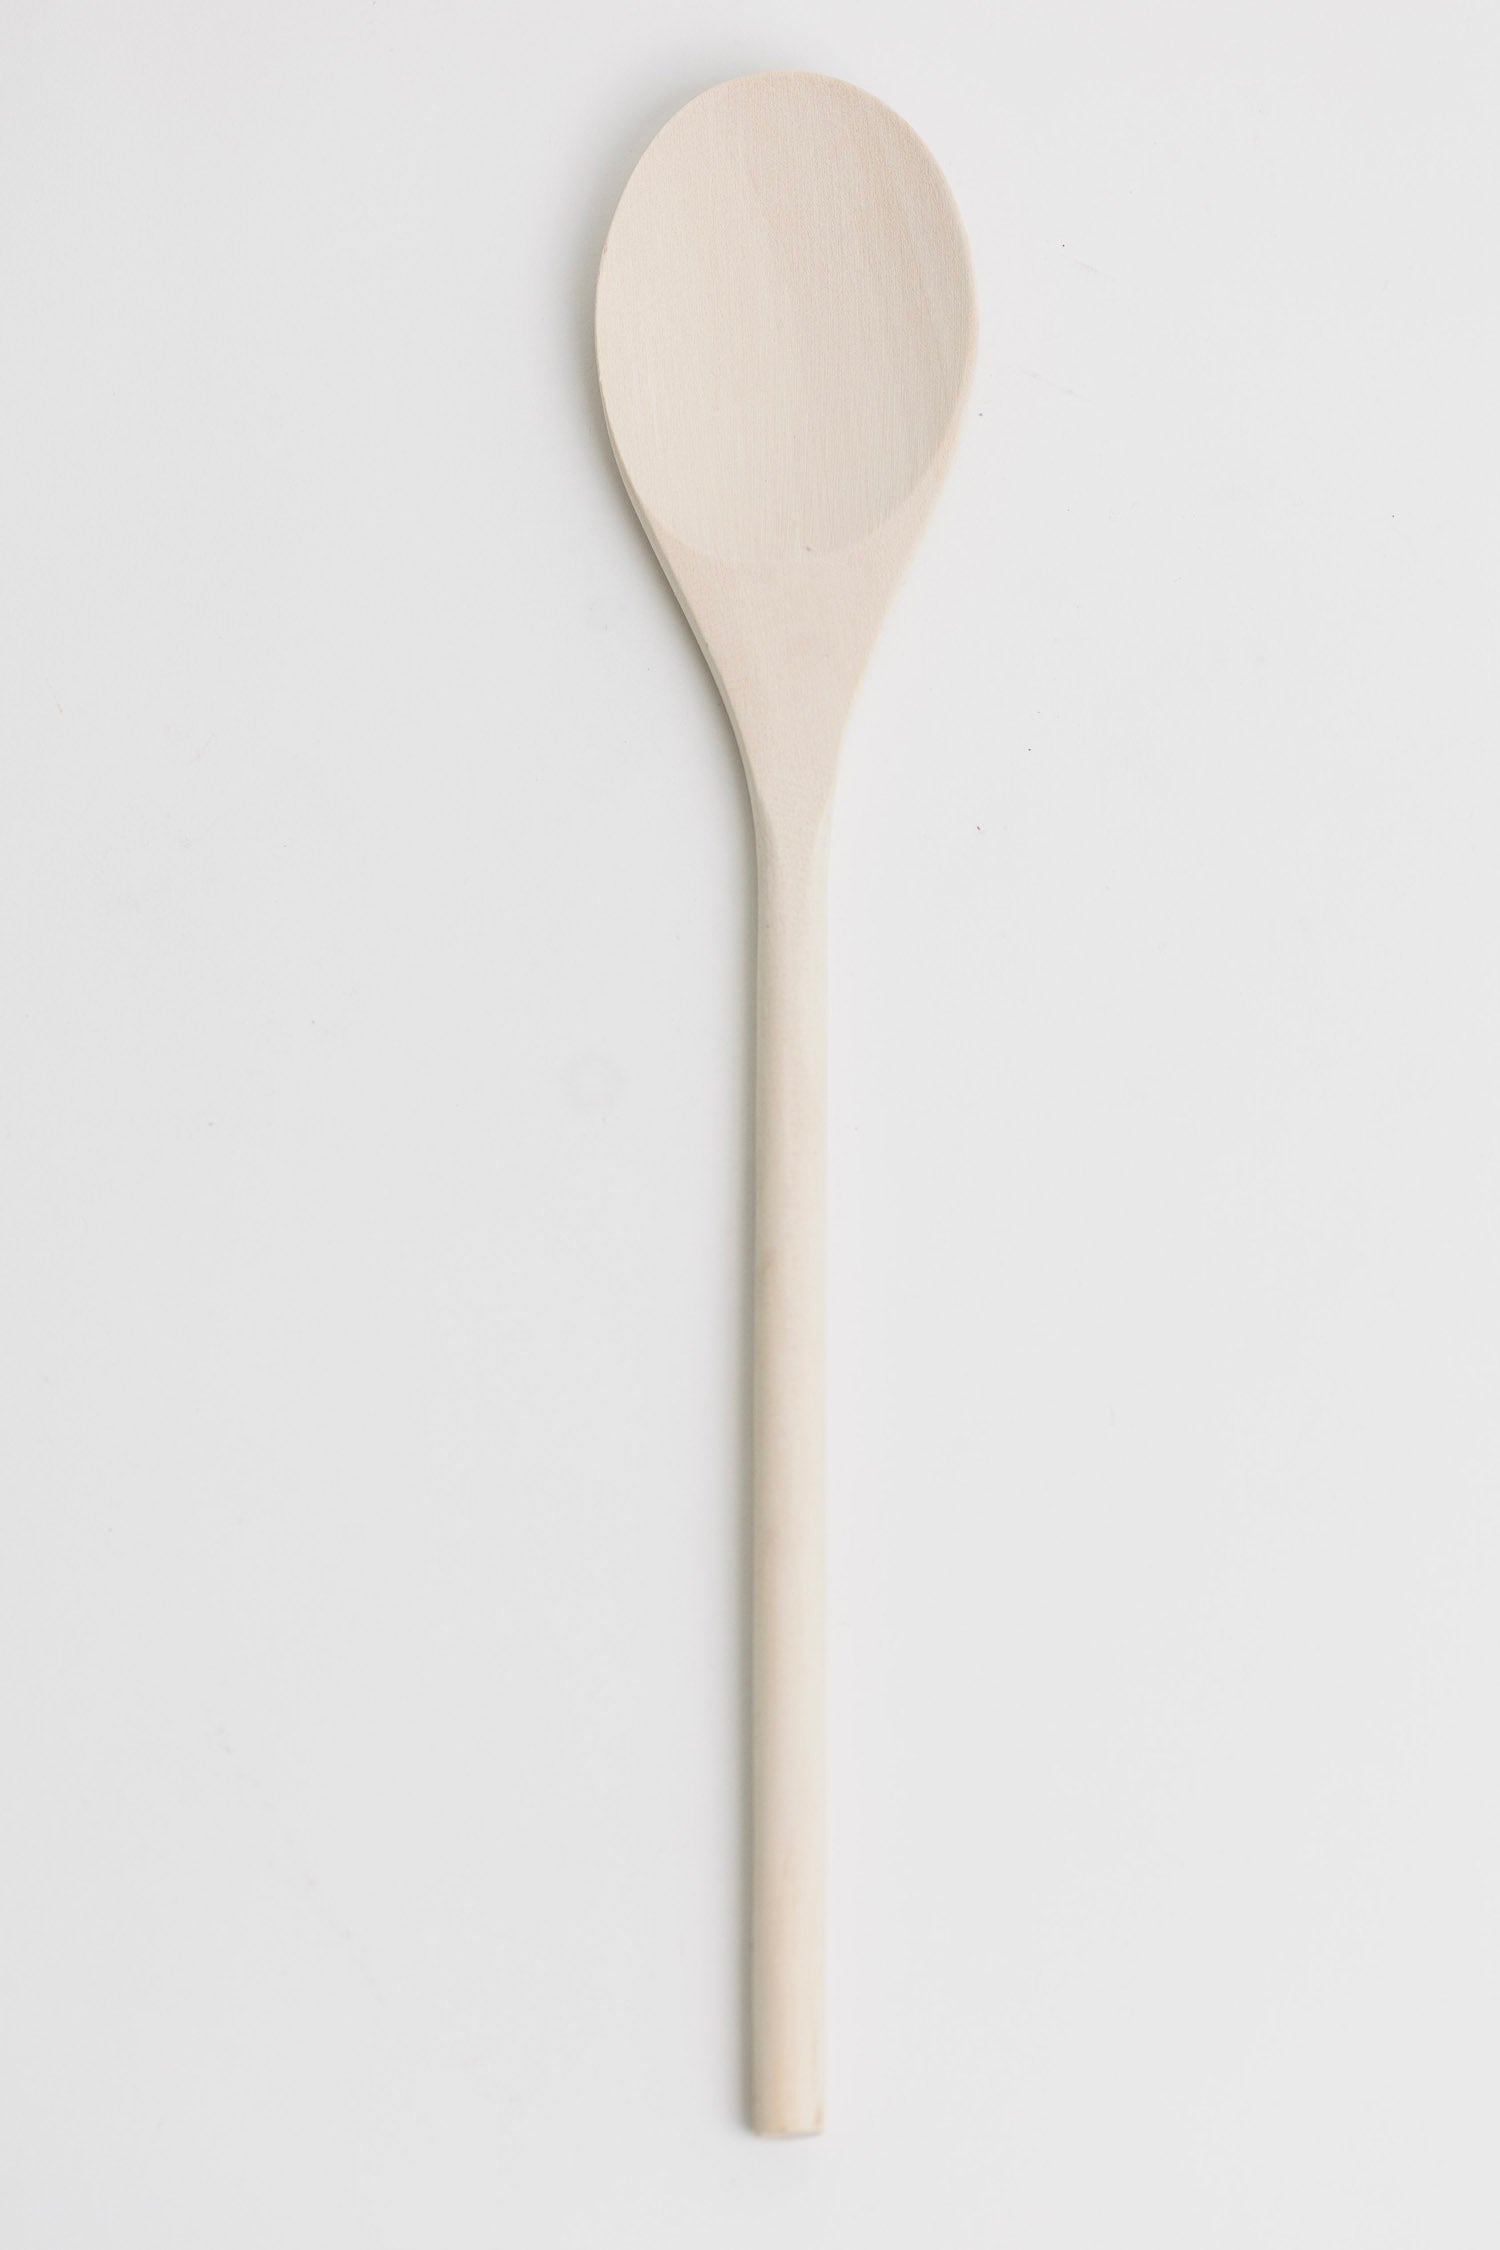 Jessie 14" Wooden Spoon